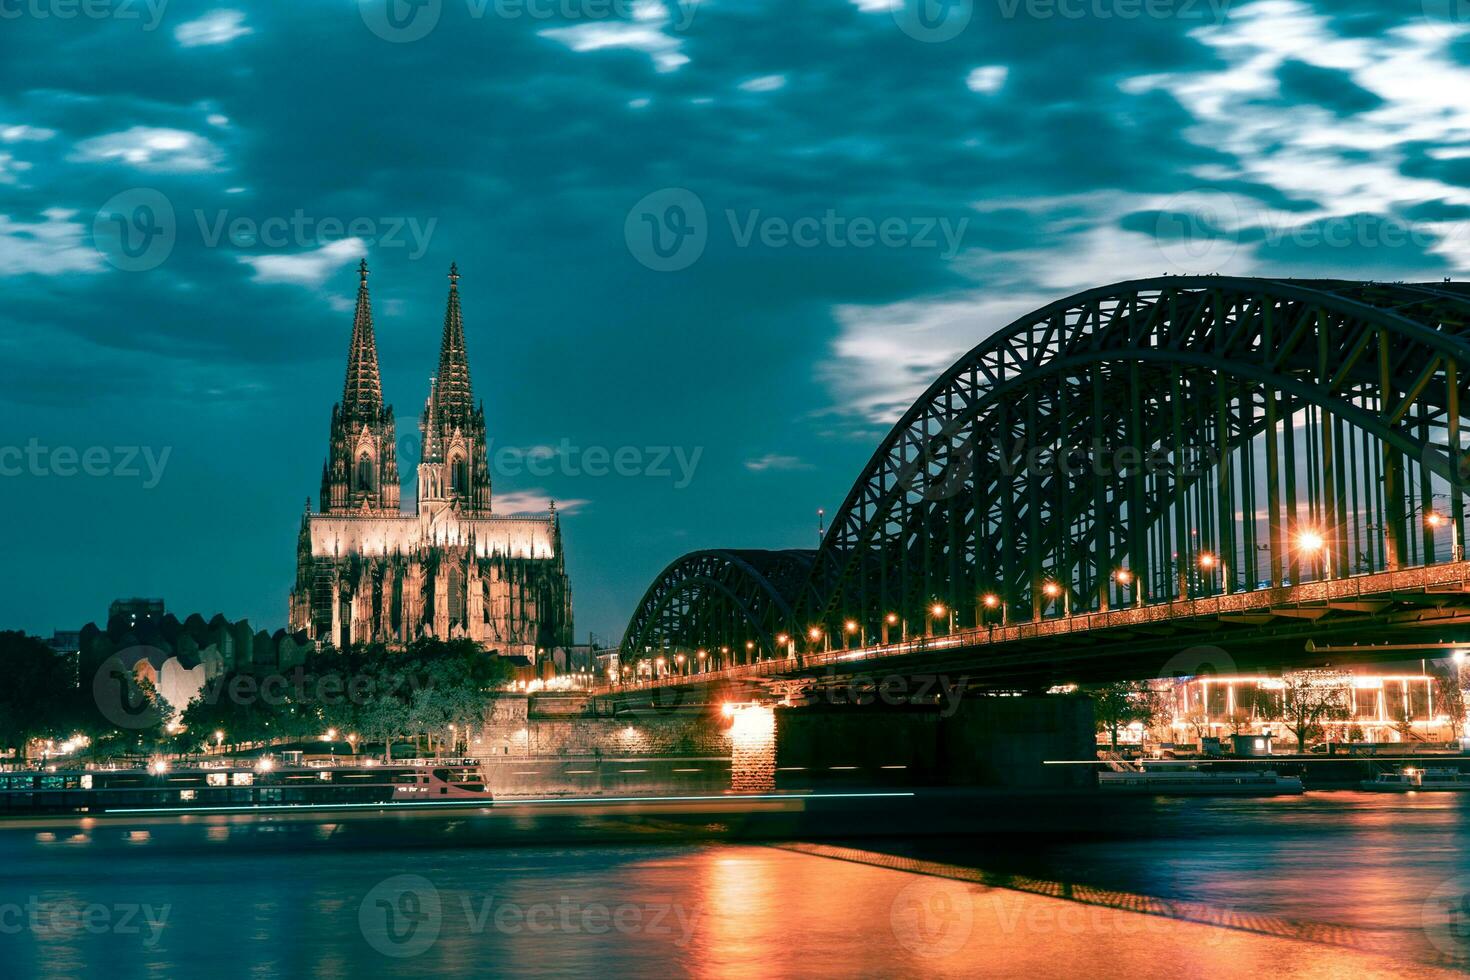 Keulen kathedraal en hohenzollern brug in de avond met verlichting tegen bewolkt lucht foto